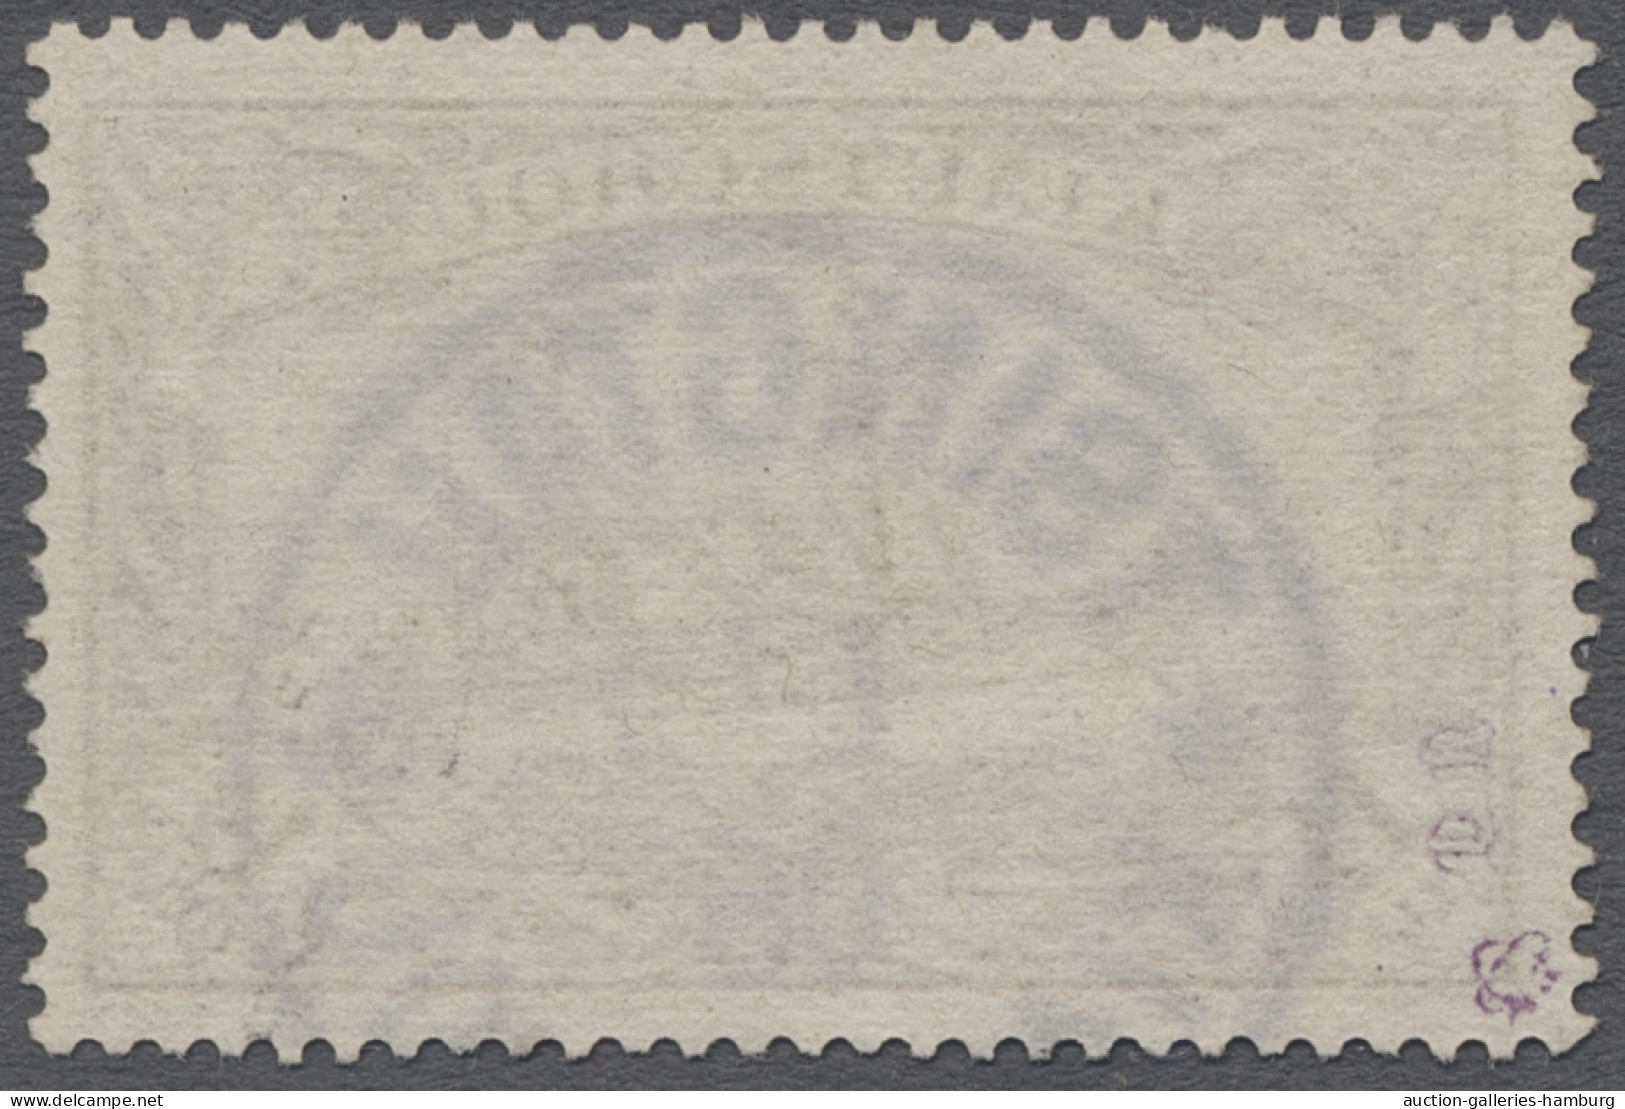 O Deutsche Kolonien - Kiautschou: 1905, Kaiseryacht Ohne Wz. In Dollarwährung, 1 1 - Kiauchau